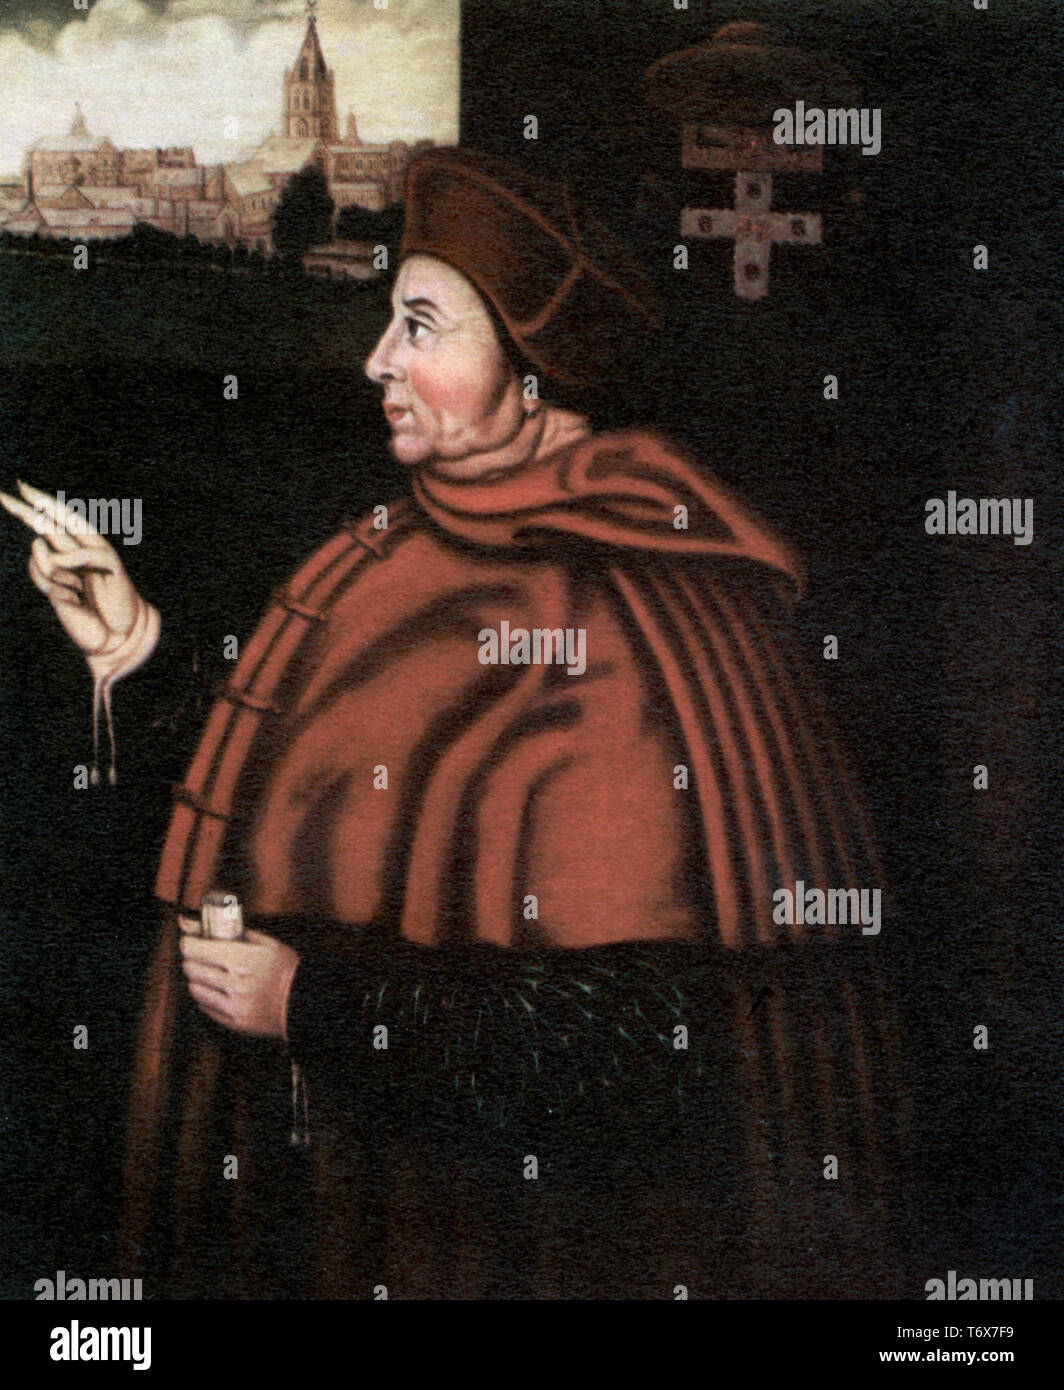 Kardinal Thomas Wolsey (c1473-1530), 16. Jahrhundert. Nach Sampson Strong (C1550-1611). Erzbischof von York und Lordkanzler von England. Kardinal Thomas Wolsey, englischer Bischof, Staatsmann und Kardinal der katholischen Kirche. Stockfoto